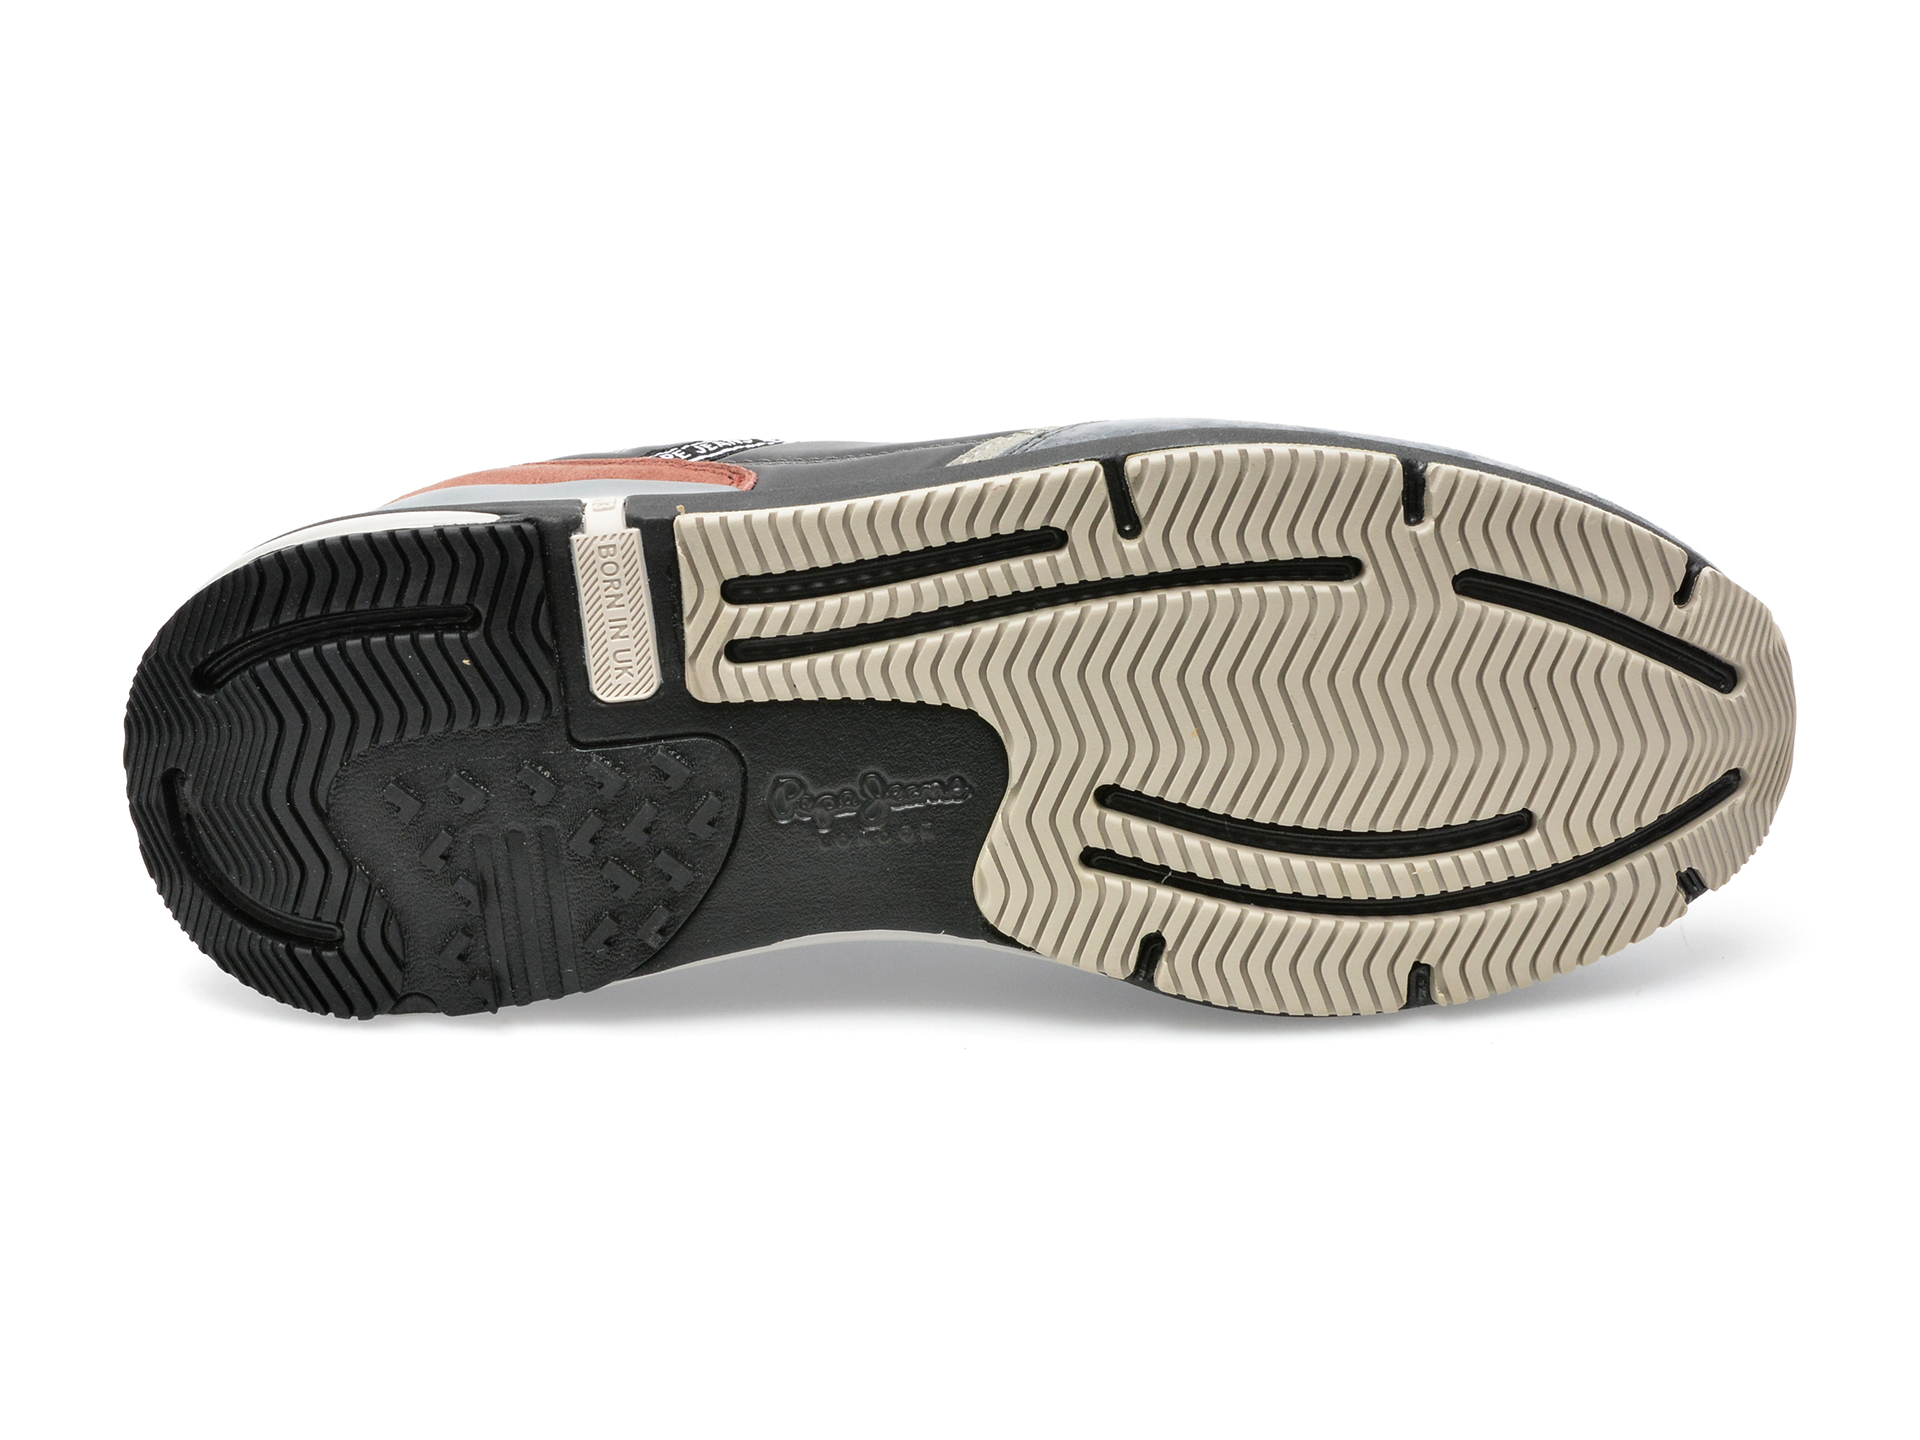 Poze Pantofi sport PEPE JEANS gri, MS30863, din material textil si piele naturala Tezyo